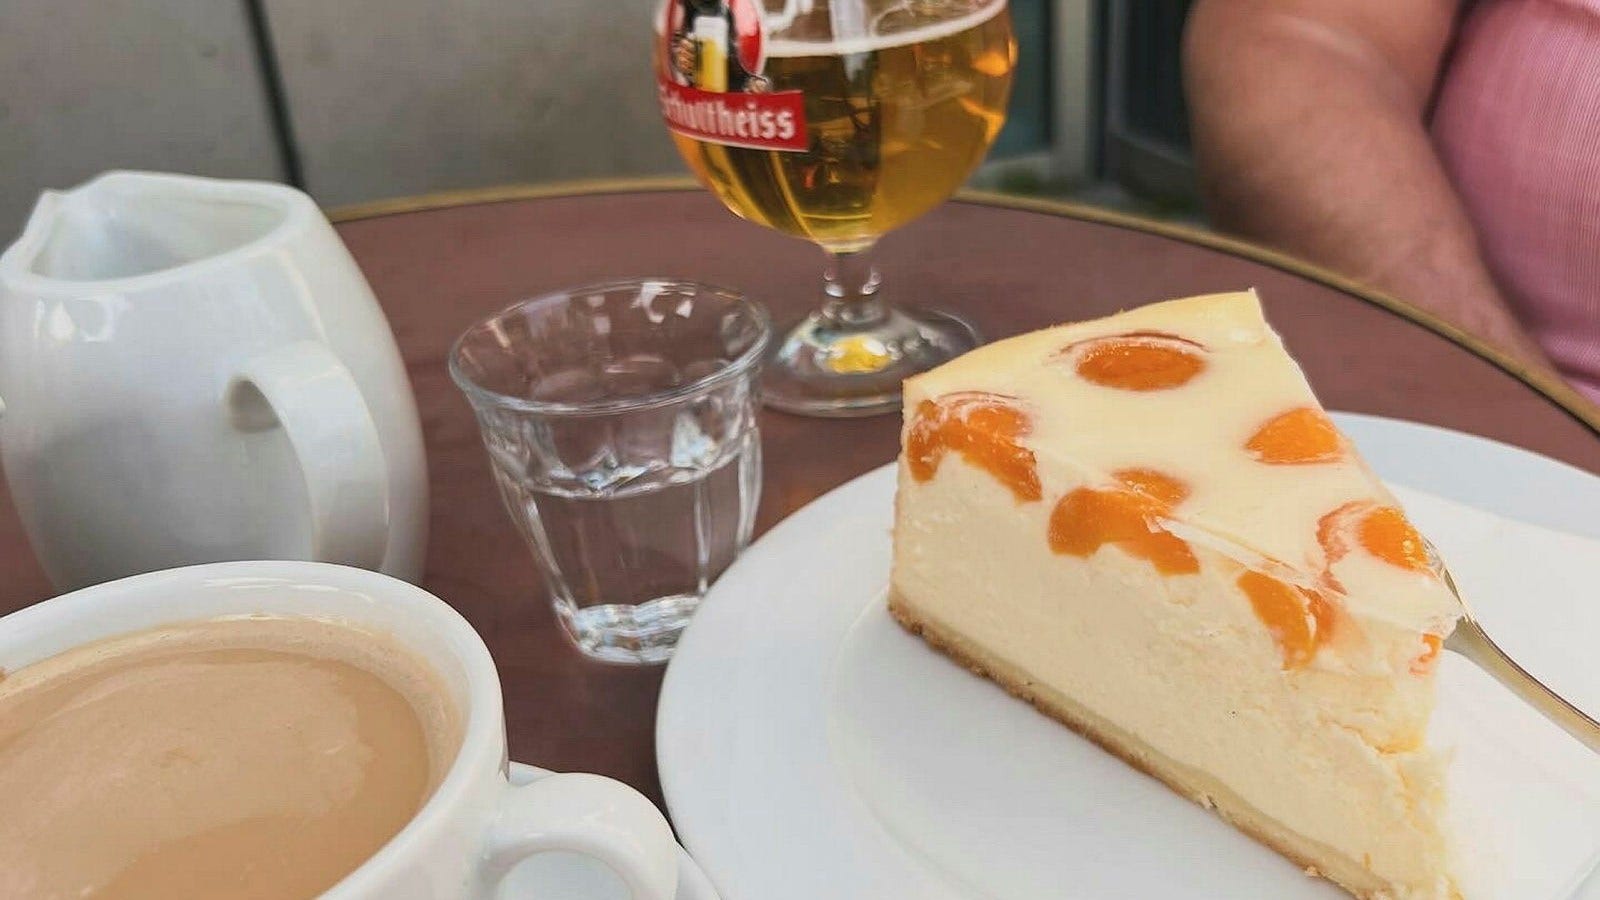 Käsekuchen med aprikoser, kaffe i kanna och öl på Unter den Linden.